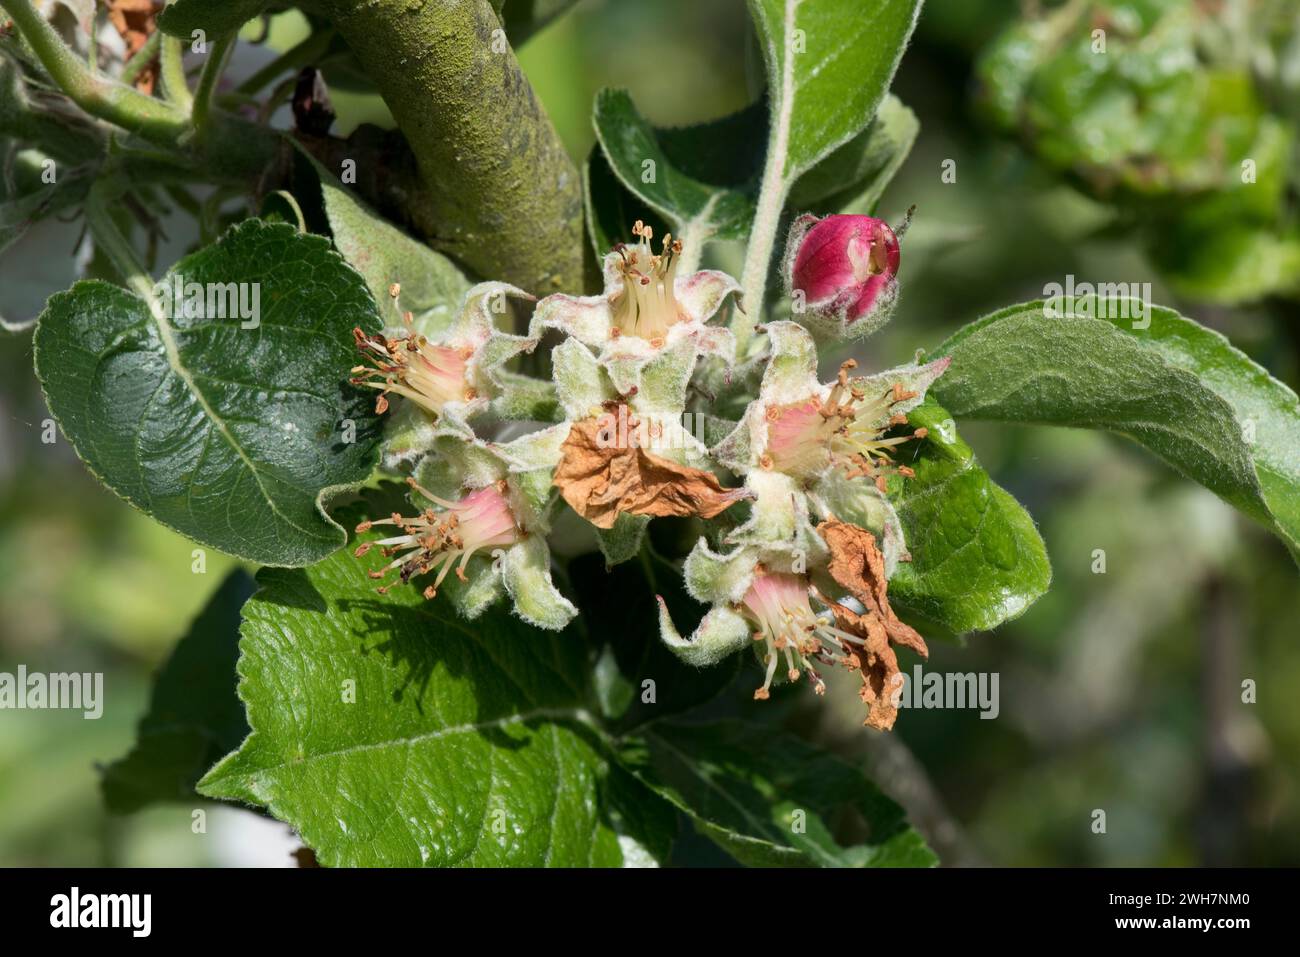 Floraison de pommiers, fleurs à 'pétale Fall' avec calice et cinq sépales autour des anthères pollinisées et ovaire central à fruit Set, Berkshire, mai Banque D'Images